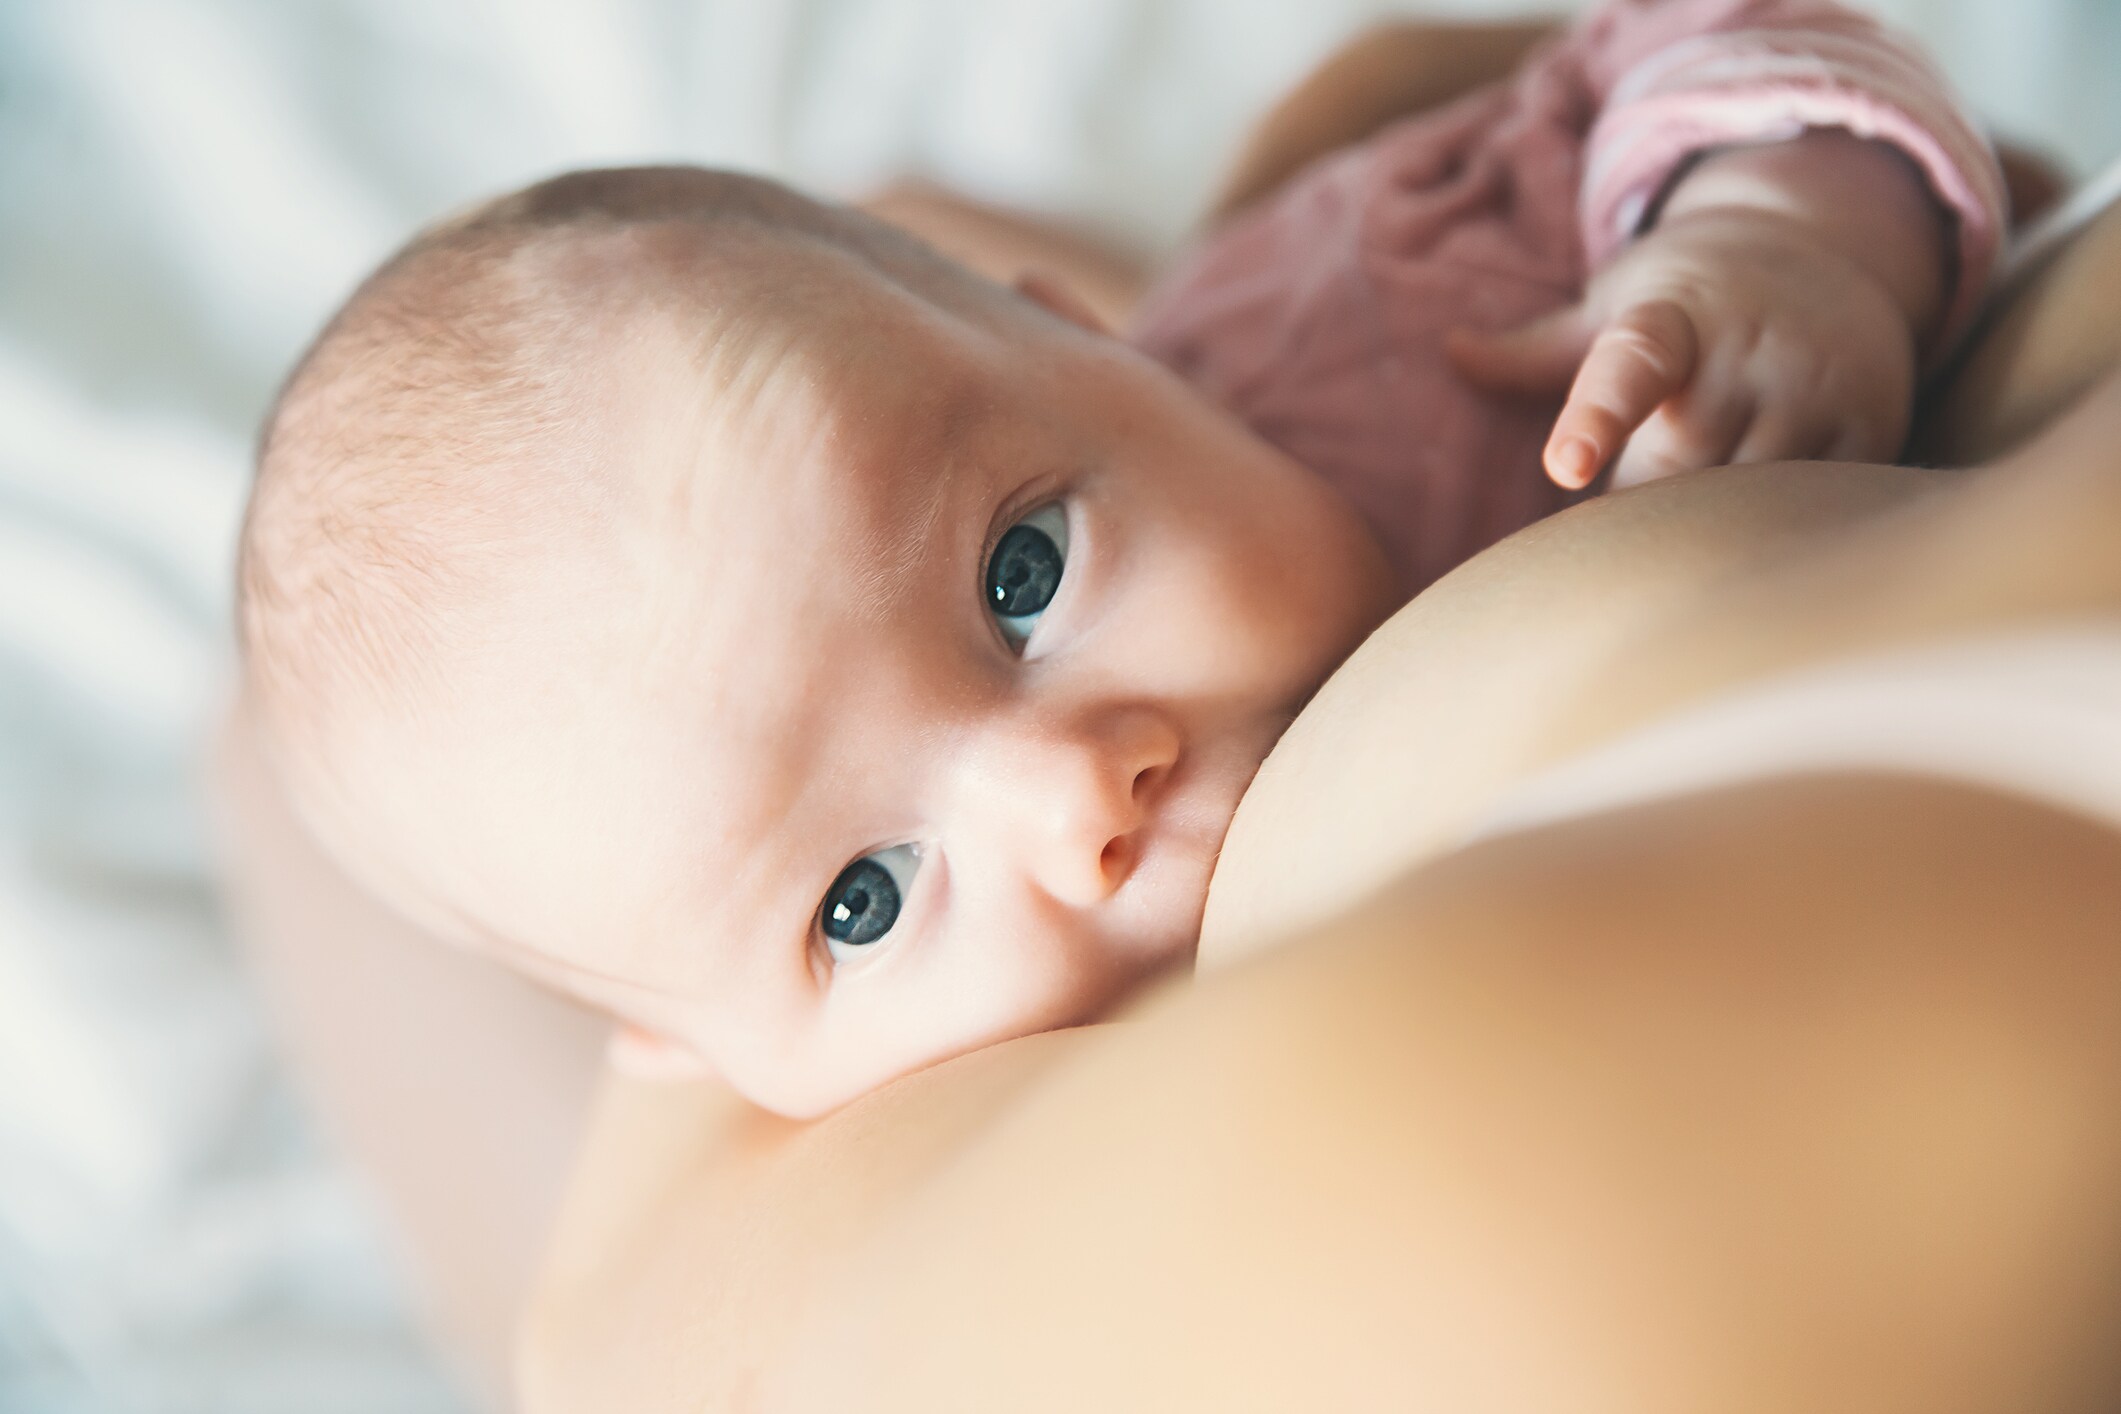 Primeur: transgender vrouw geeft borstvoeding